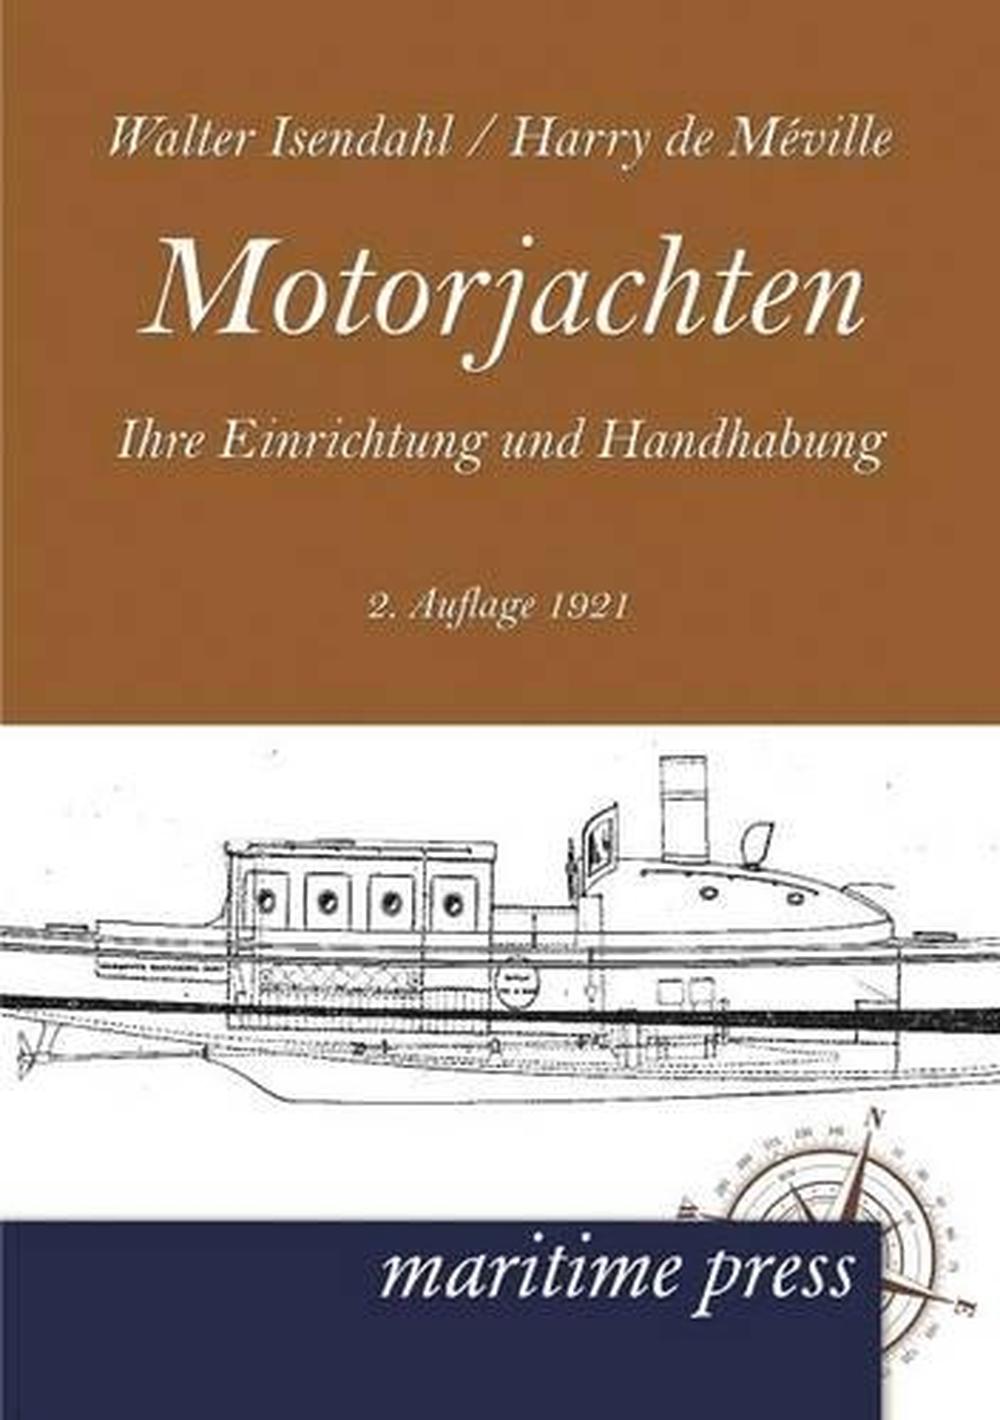 Motorjachten: ihre Einrichtung und Handhabung (2.Auflage 1921) by Walter Isendah - Afbeelding 1 van 1